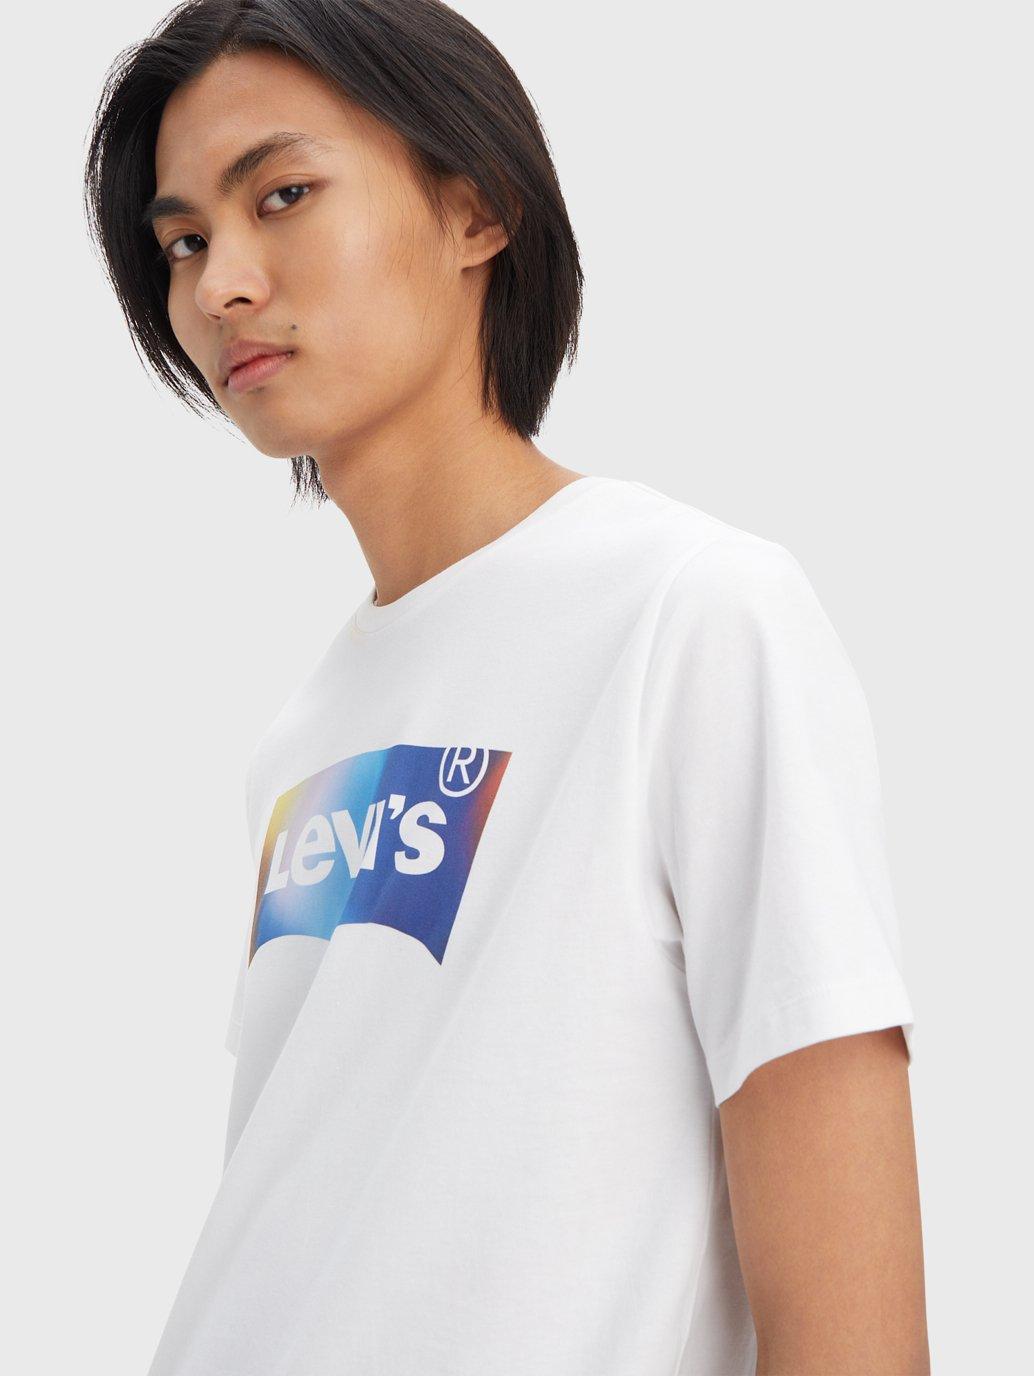 Buy Levi's® Men's Classic Graphic T-Shirt| Levi's® Official Online Store PH